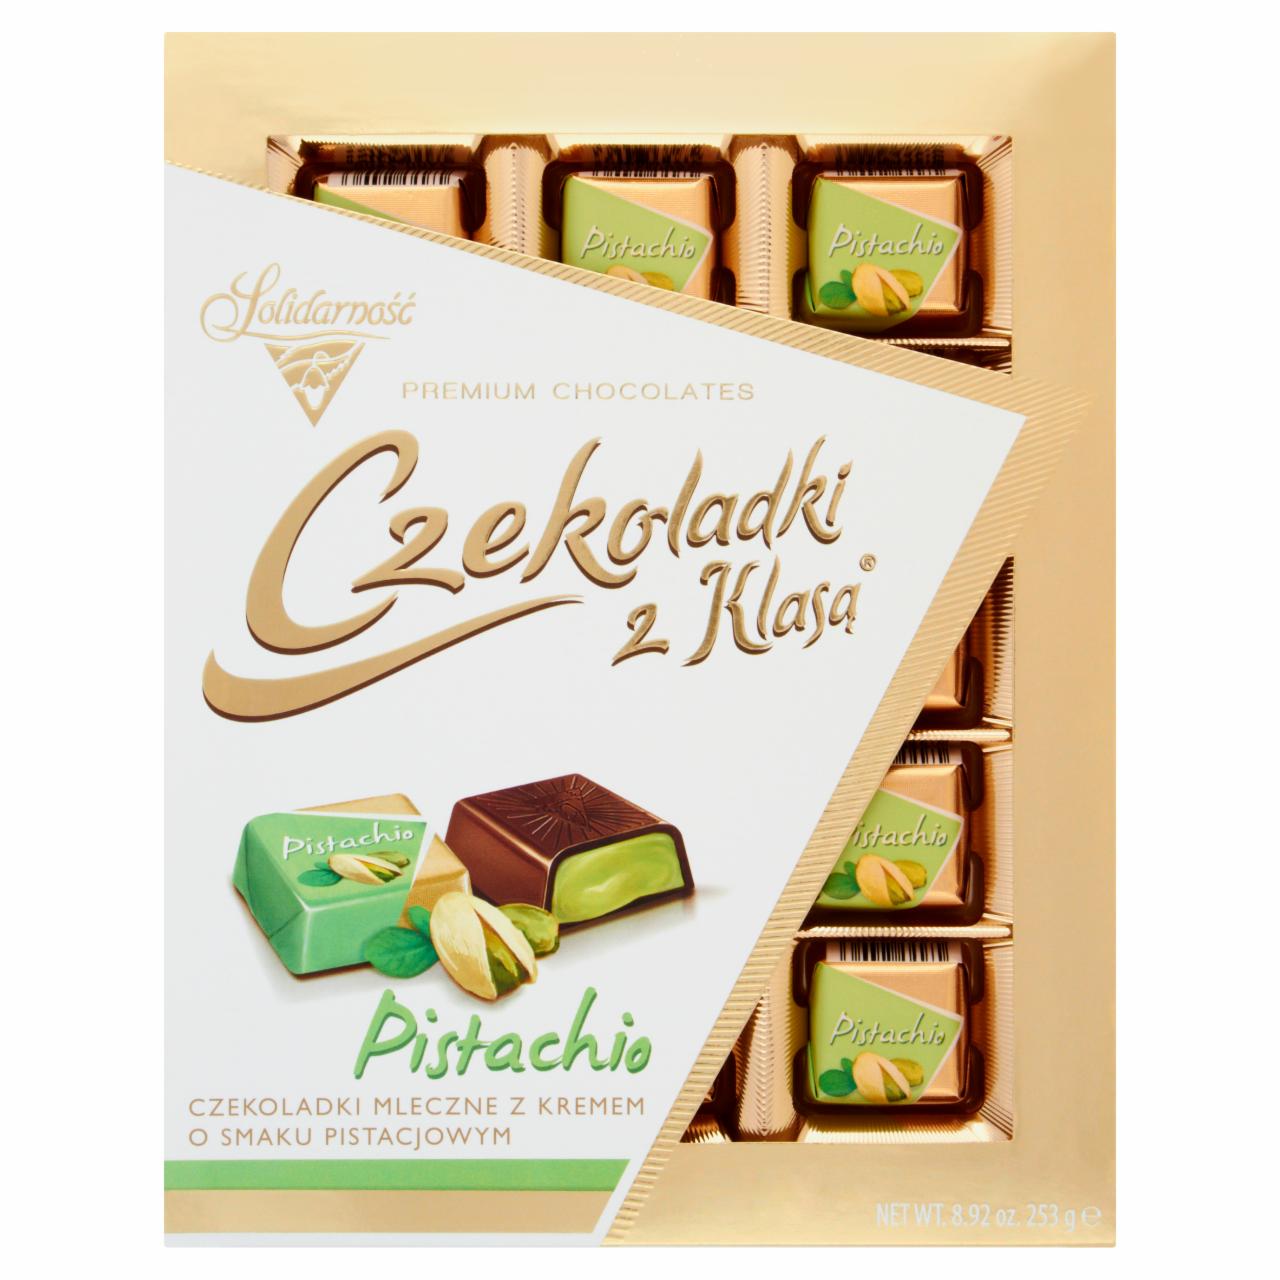 Fotografie - Pistachio Premium Chocolates Goplana